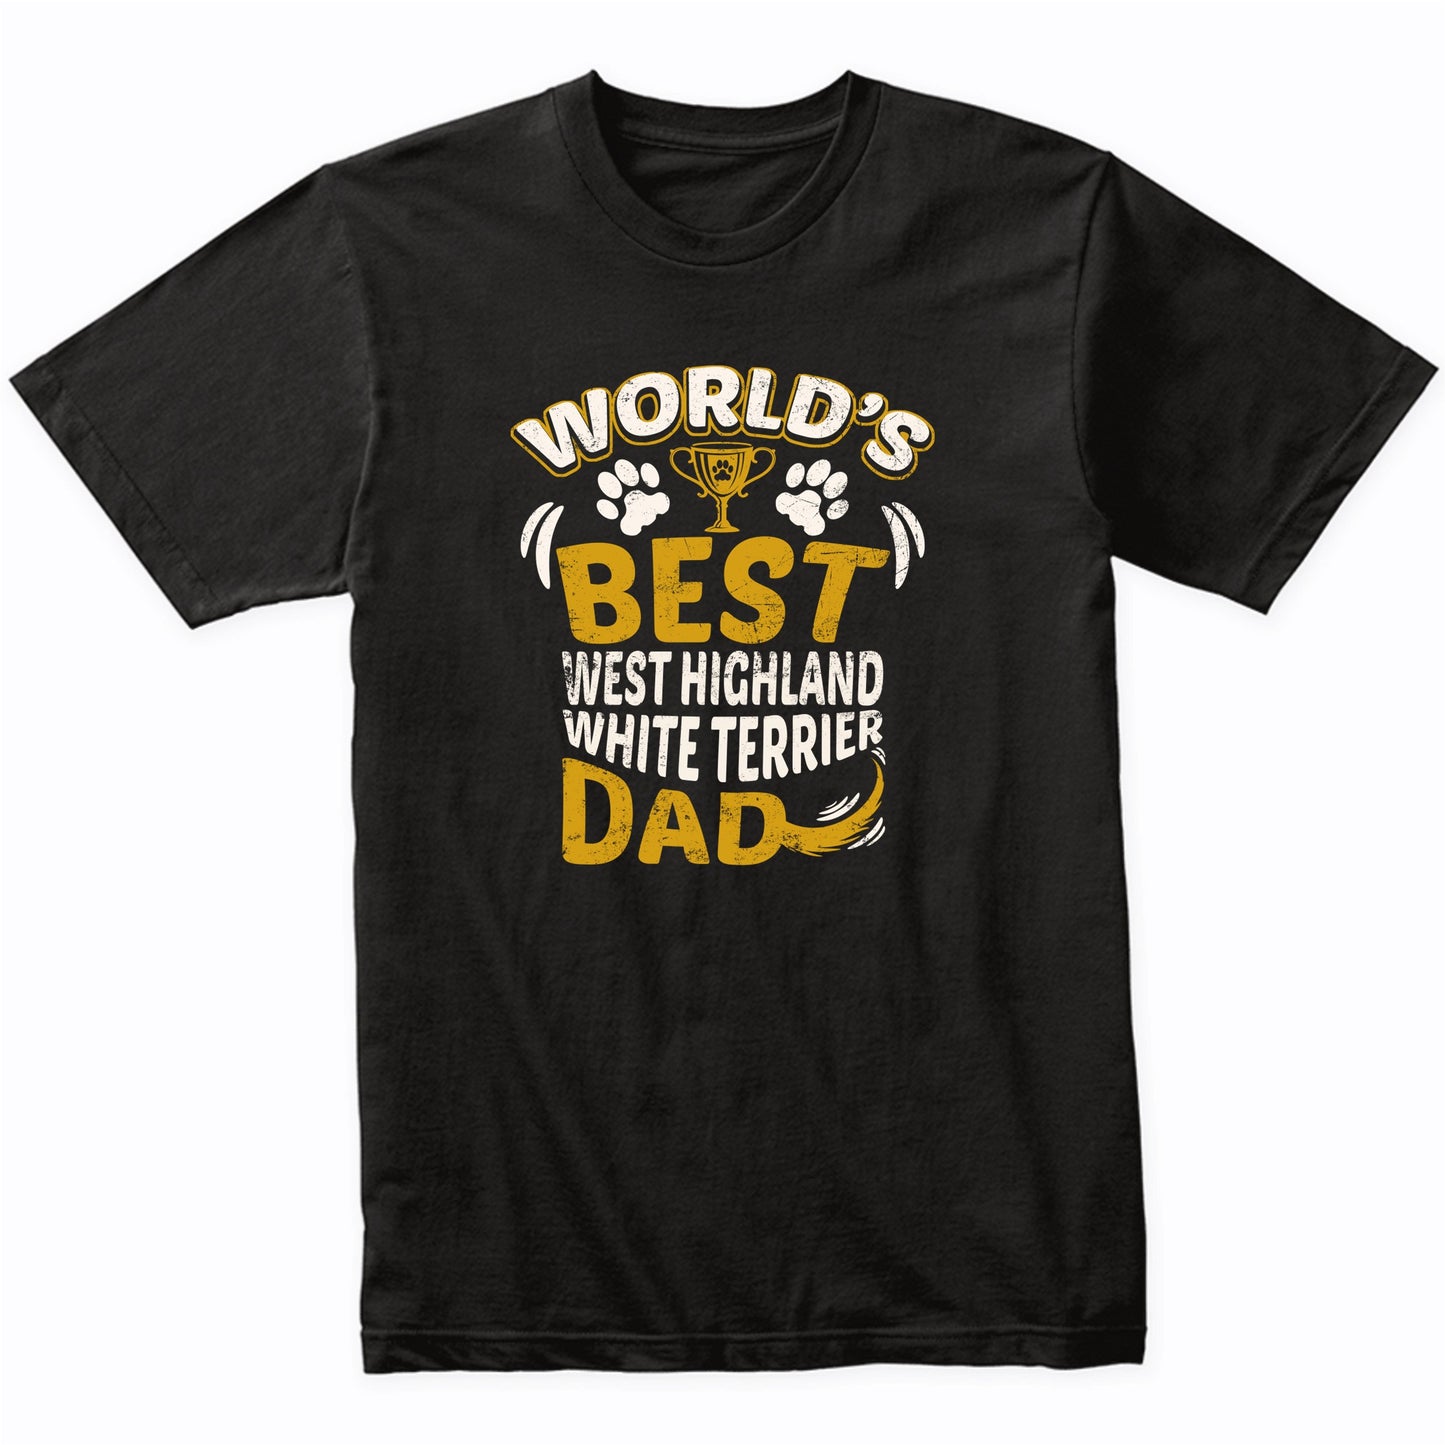 World's Best West Highland White Terrier Dad Graphic T-Shirt